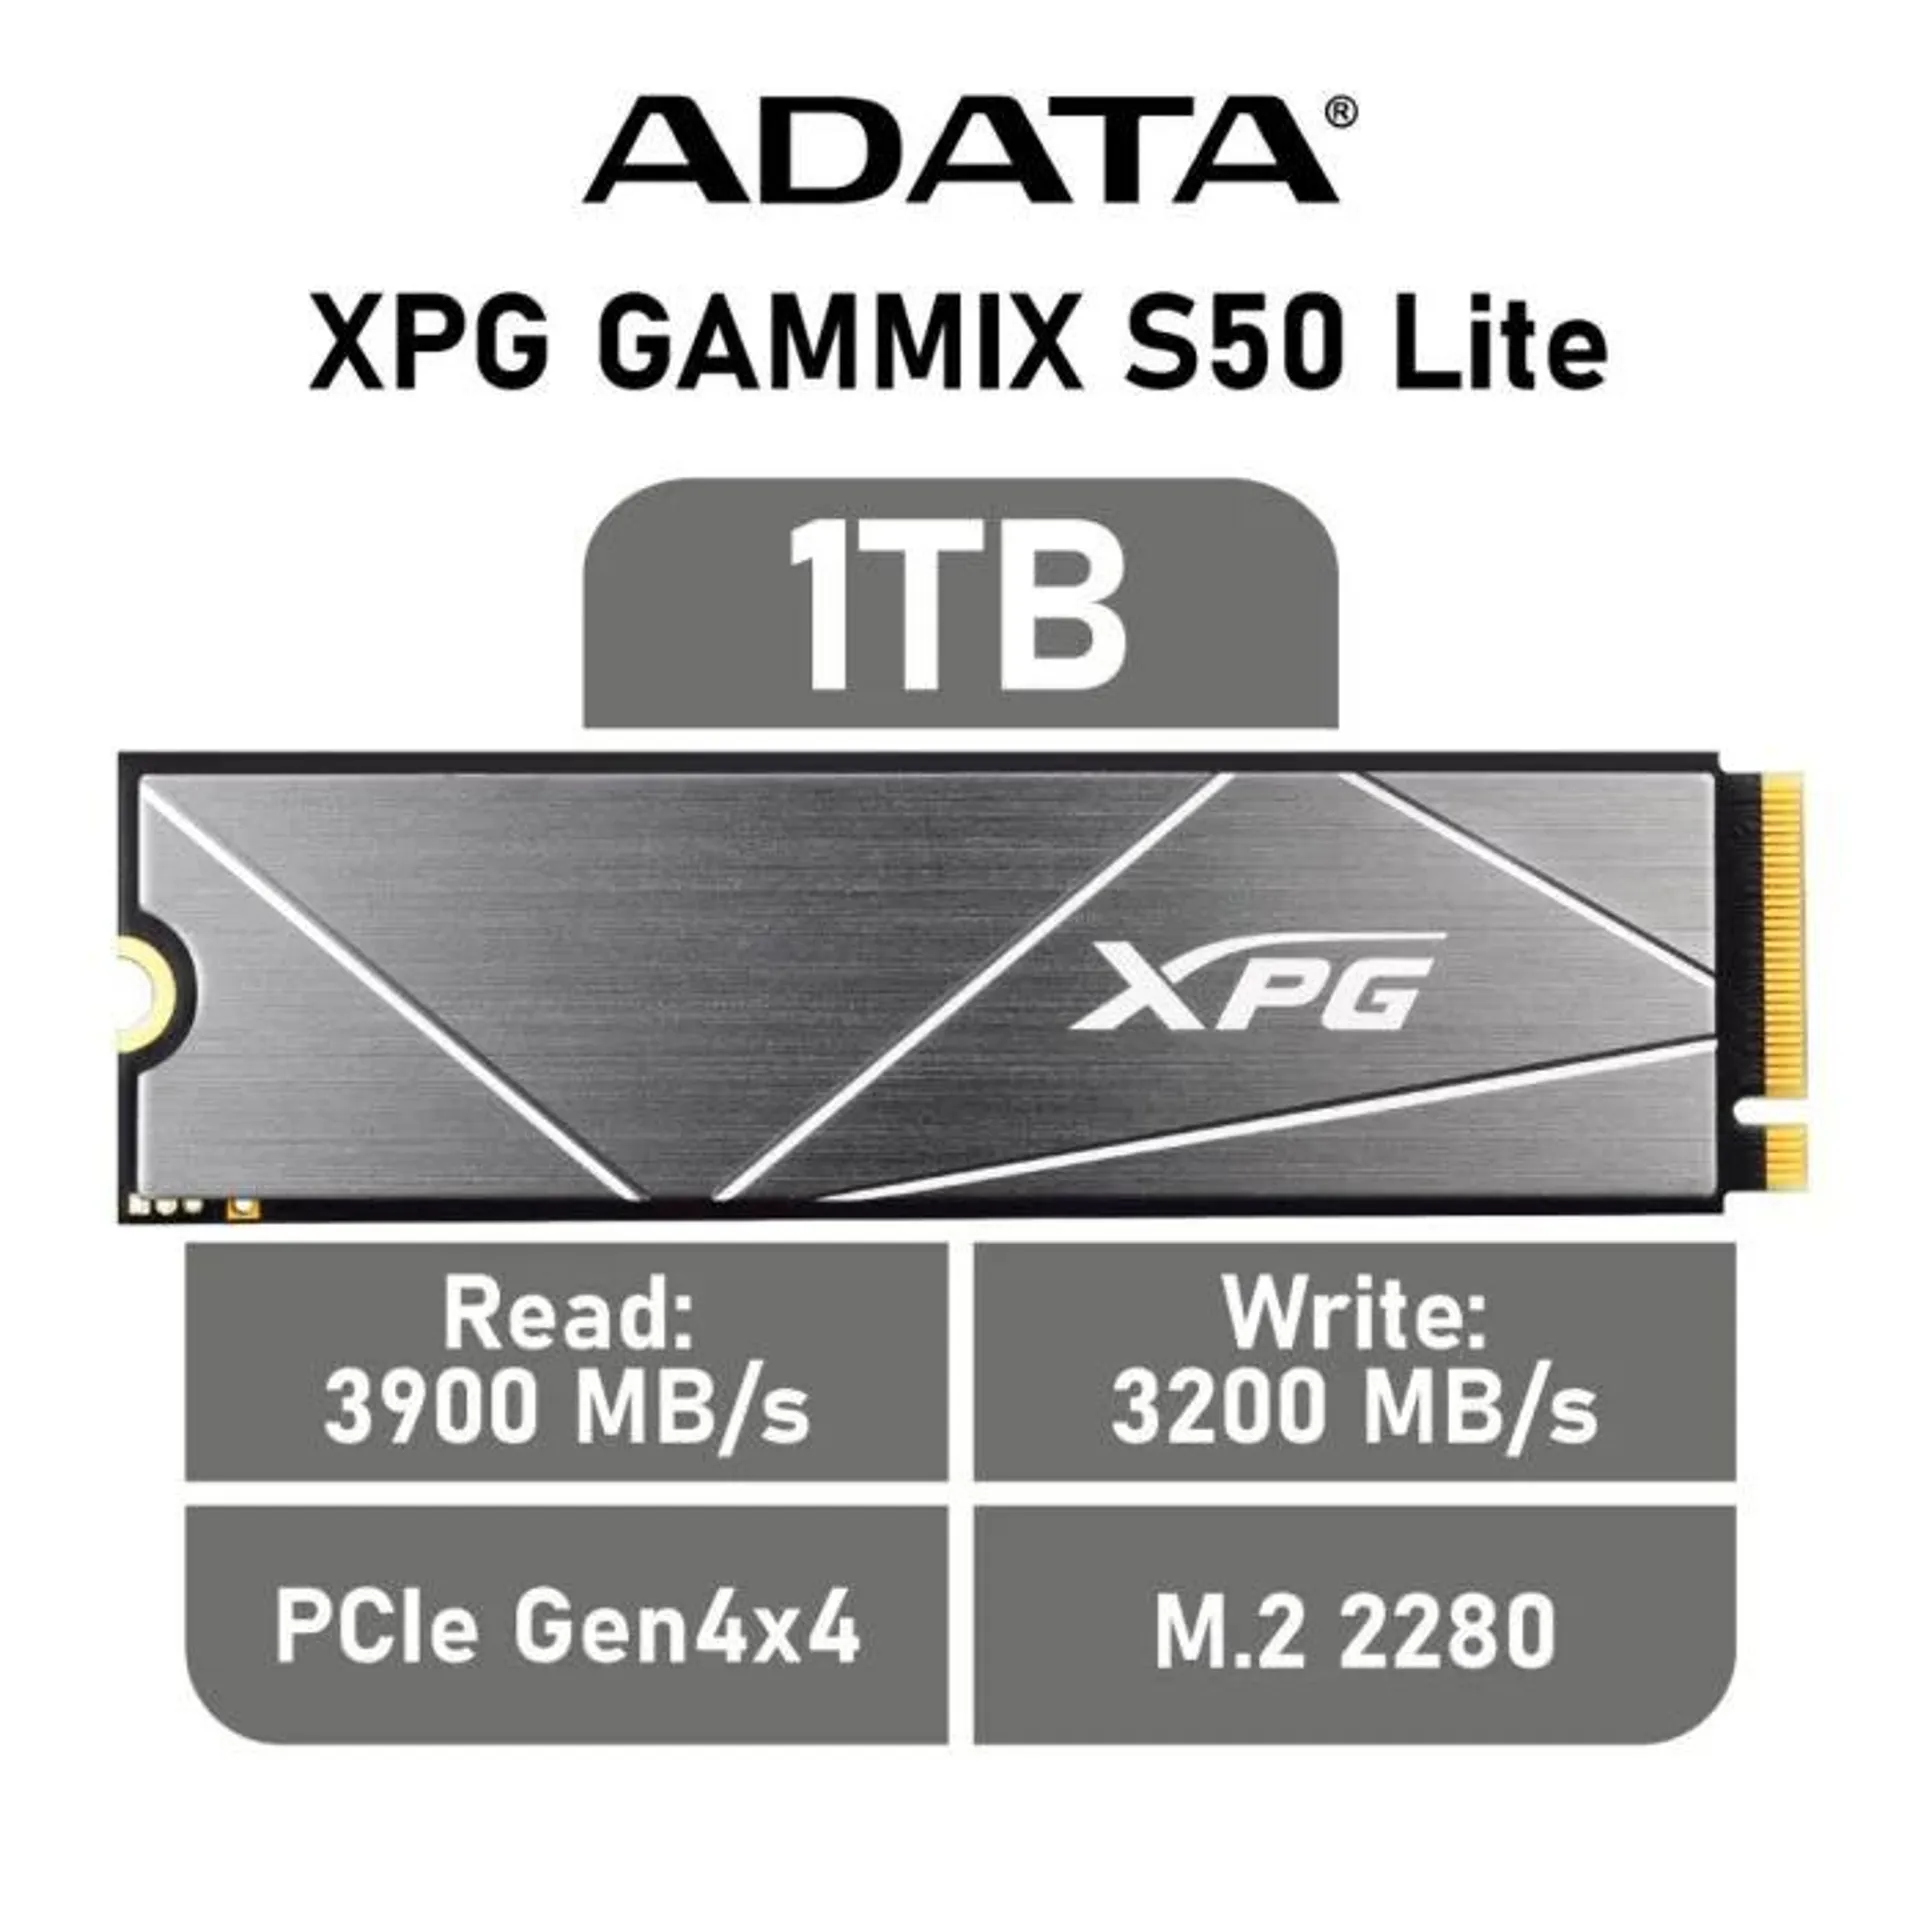 ADATA XPG GAMMIX S50 Lite 1TB PCIe Gen4x4 AGAMMIXS50L-1T-C M.2 2280 Solid State Drive